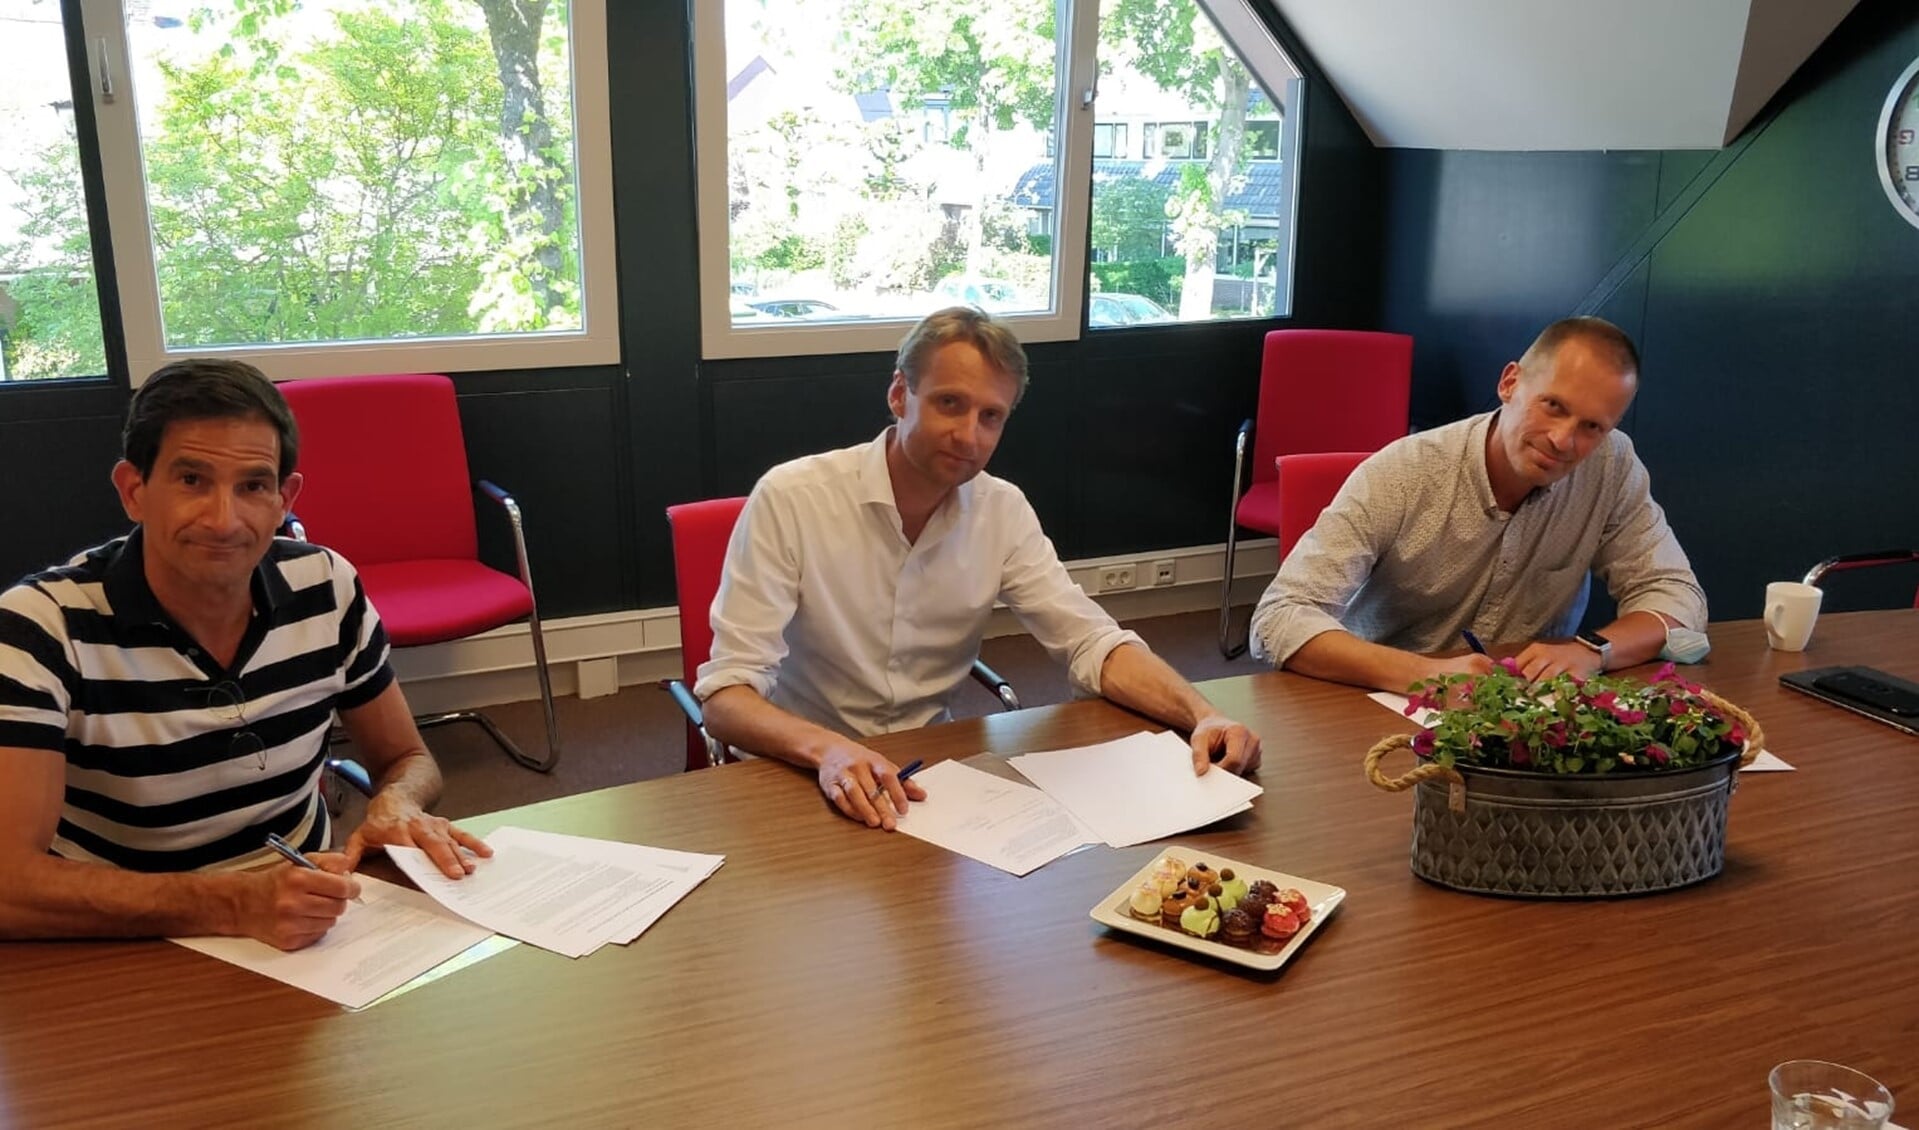 Wethouder Maarten Hoelscher (l), Marijn Diesch (m), voorzitter Maatschap groepspraktijk Huizen en Robert Boersma (r), directeur stichting wijkgezondheidscentra Huizen, tekenen de overeenkomst.